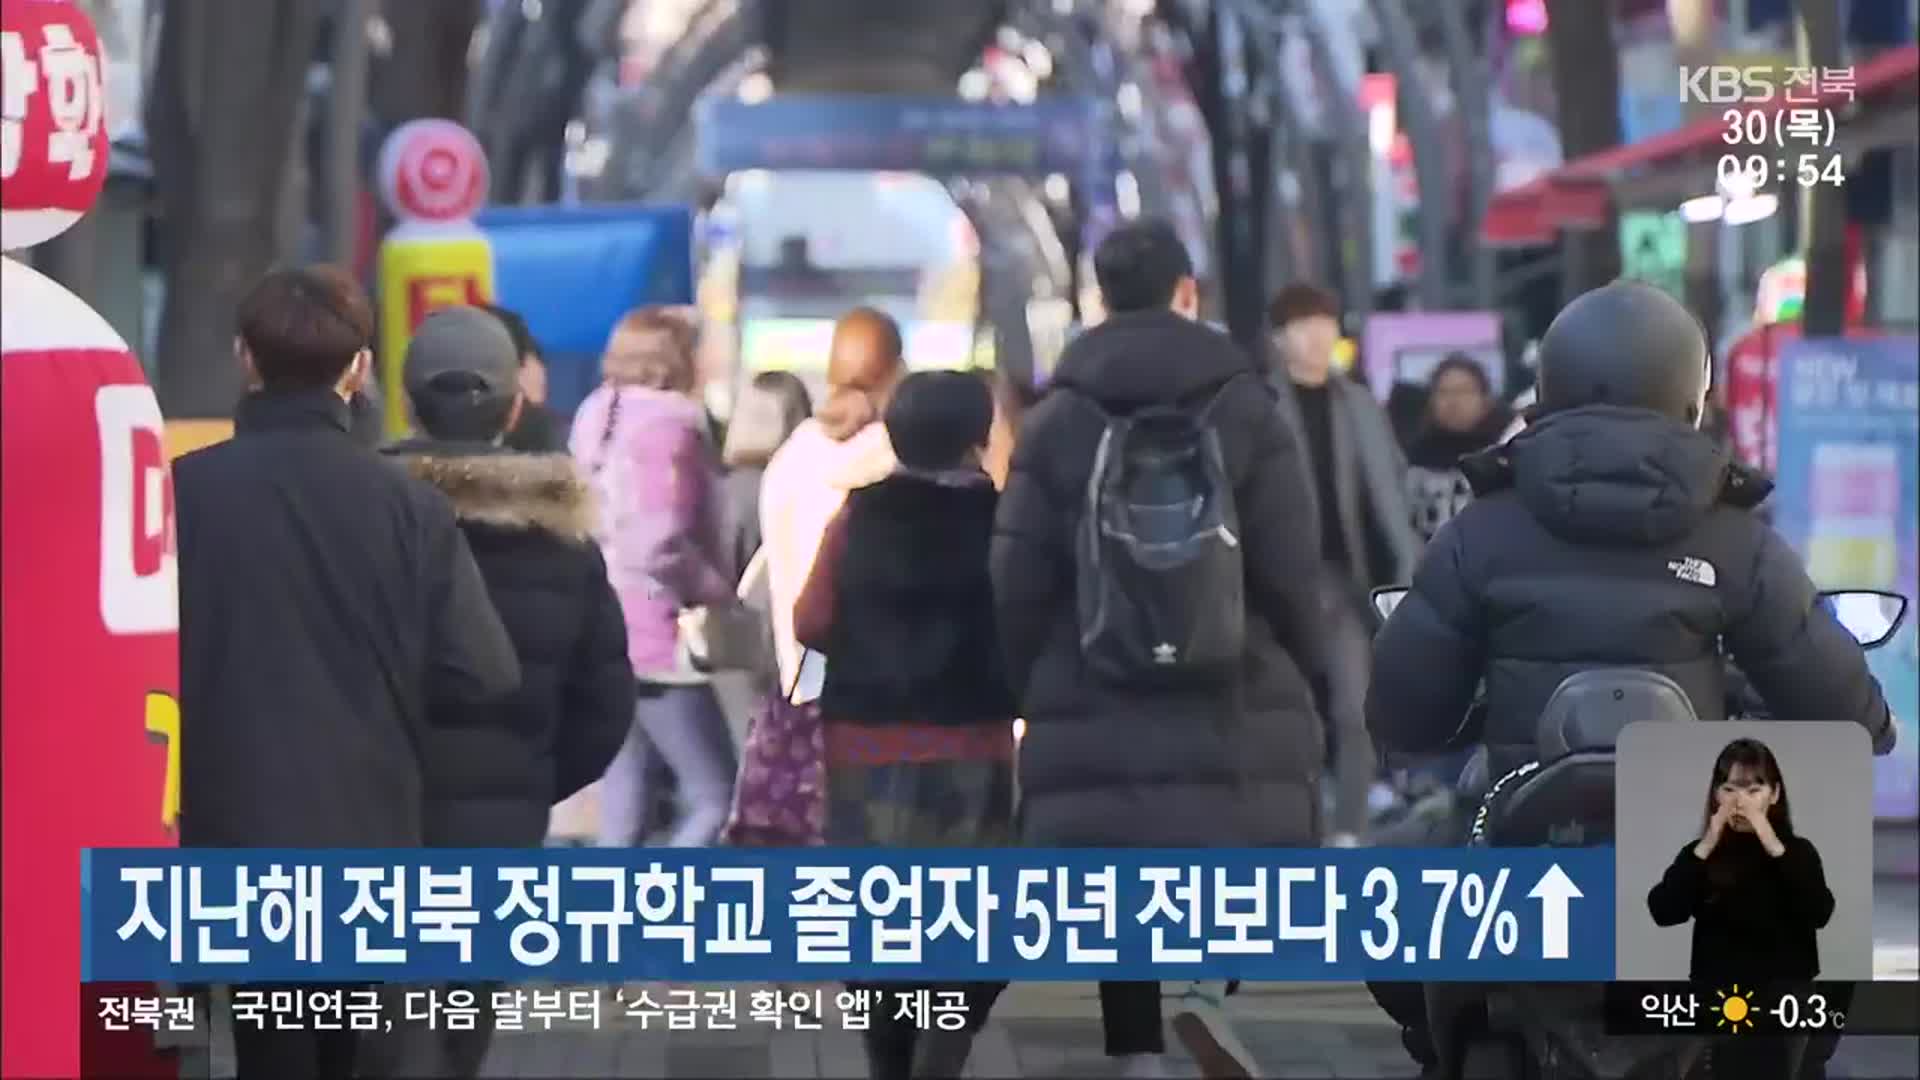 지난해 전북 정규학교 졸업자 5년 전보다 3.7%↑